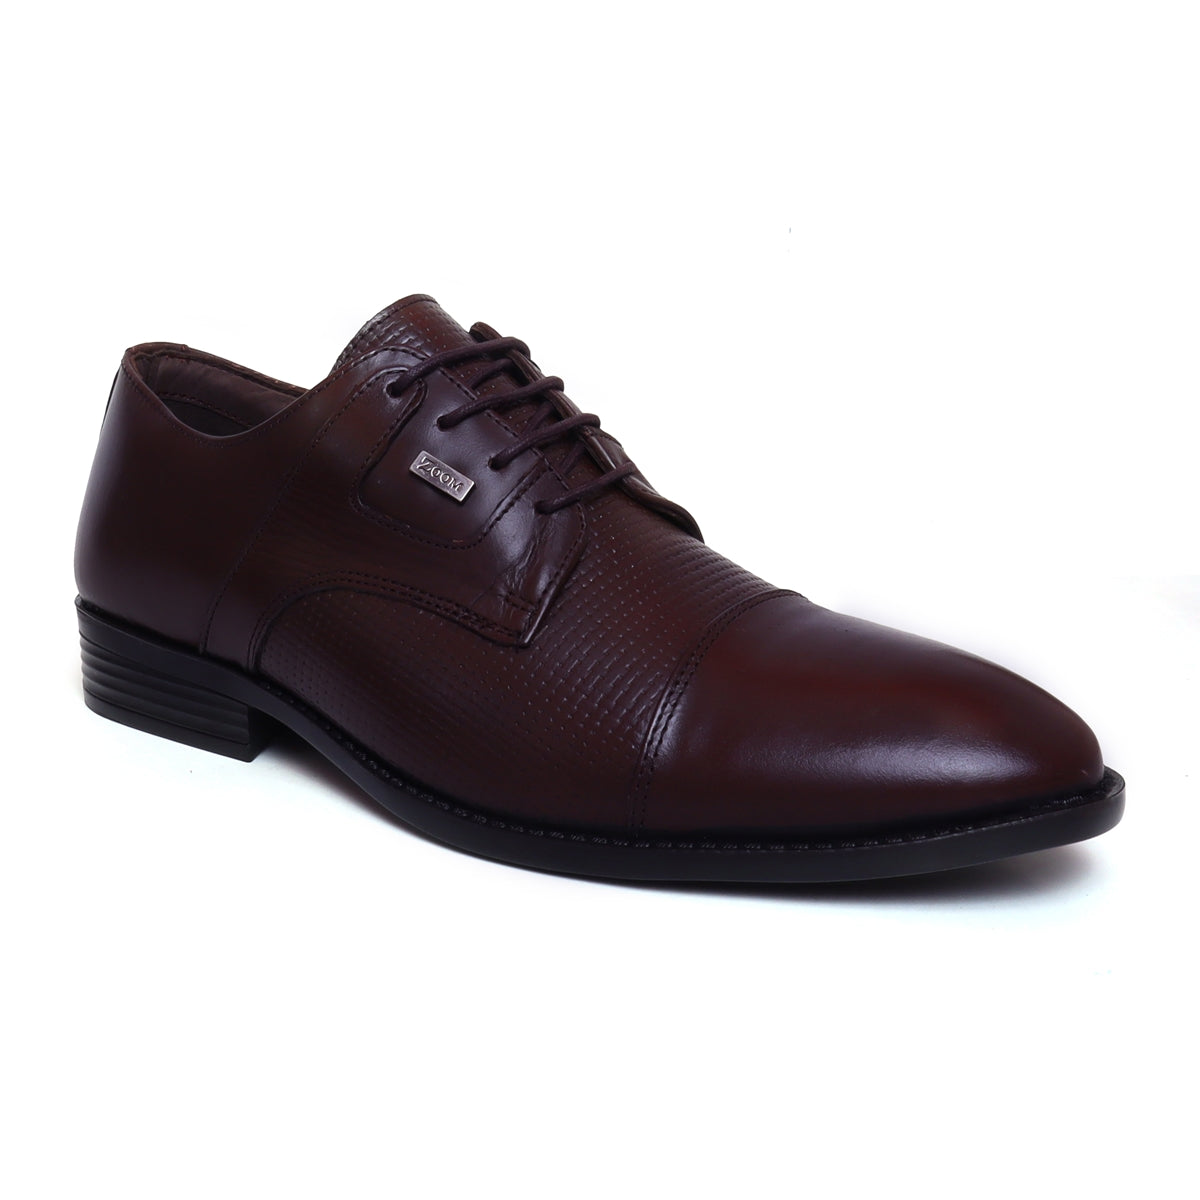 Adelaide scheuren opwinding Zoom Shoes™ Classic Leather Shoes for Men 2970 | Leather Shoes – Zoom Shoes  India